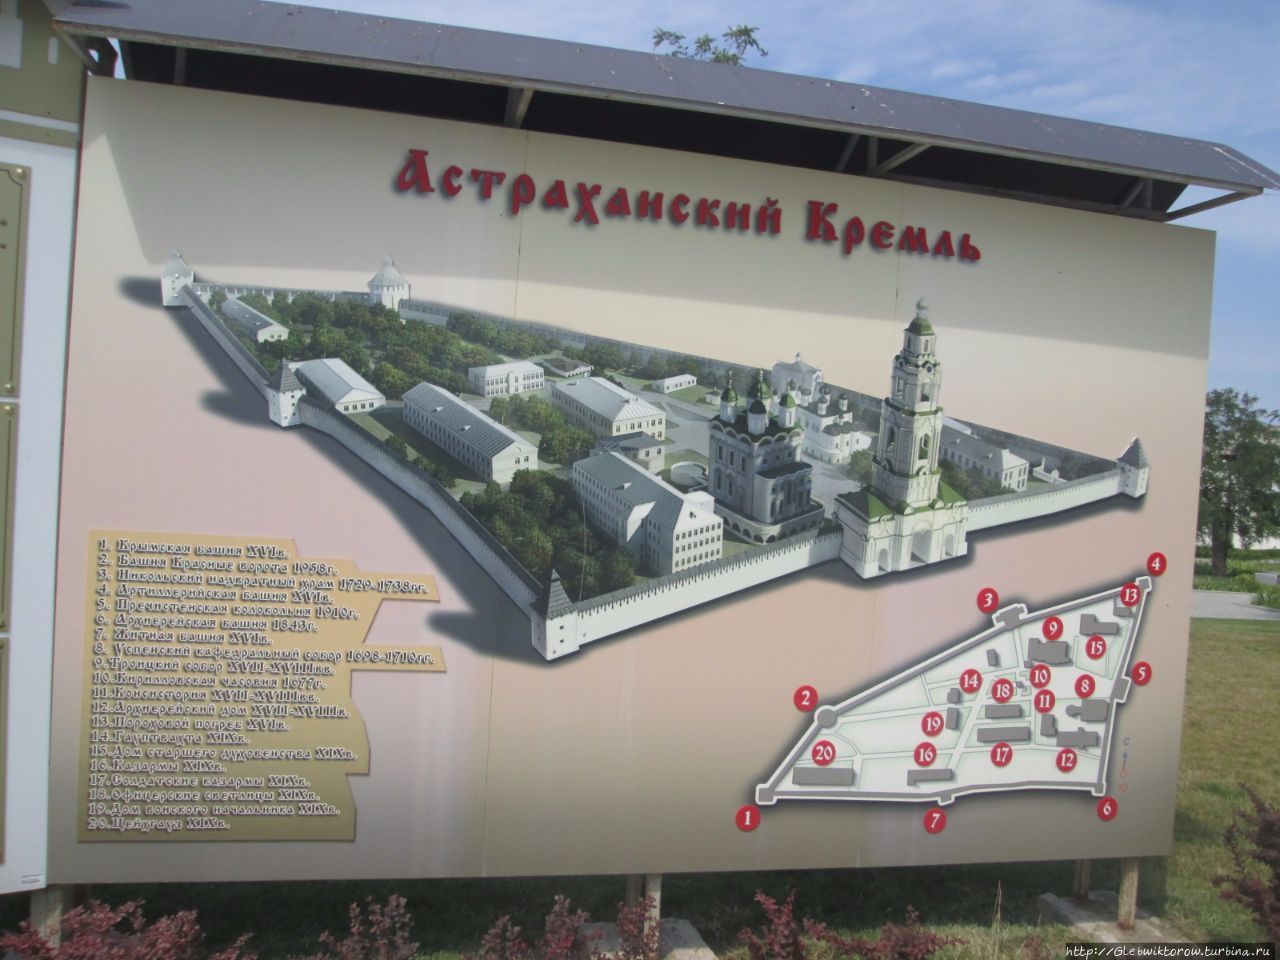 Прогулка по Кремлю Астрахань, Россия